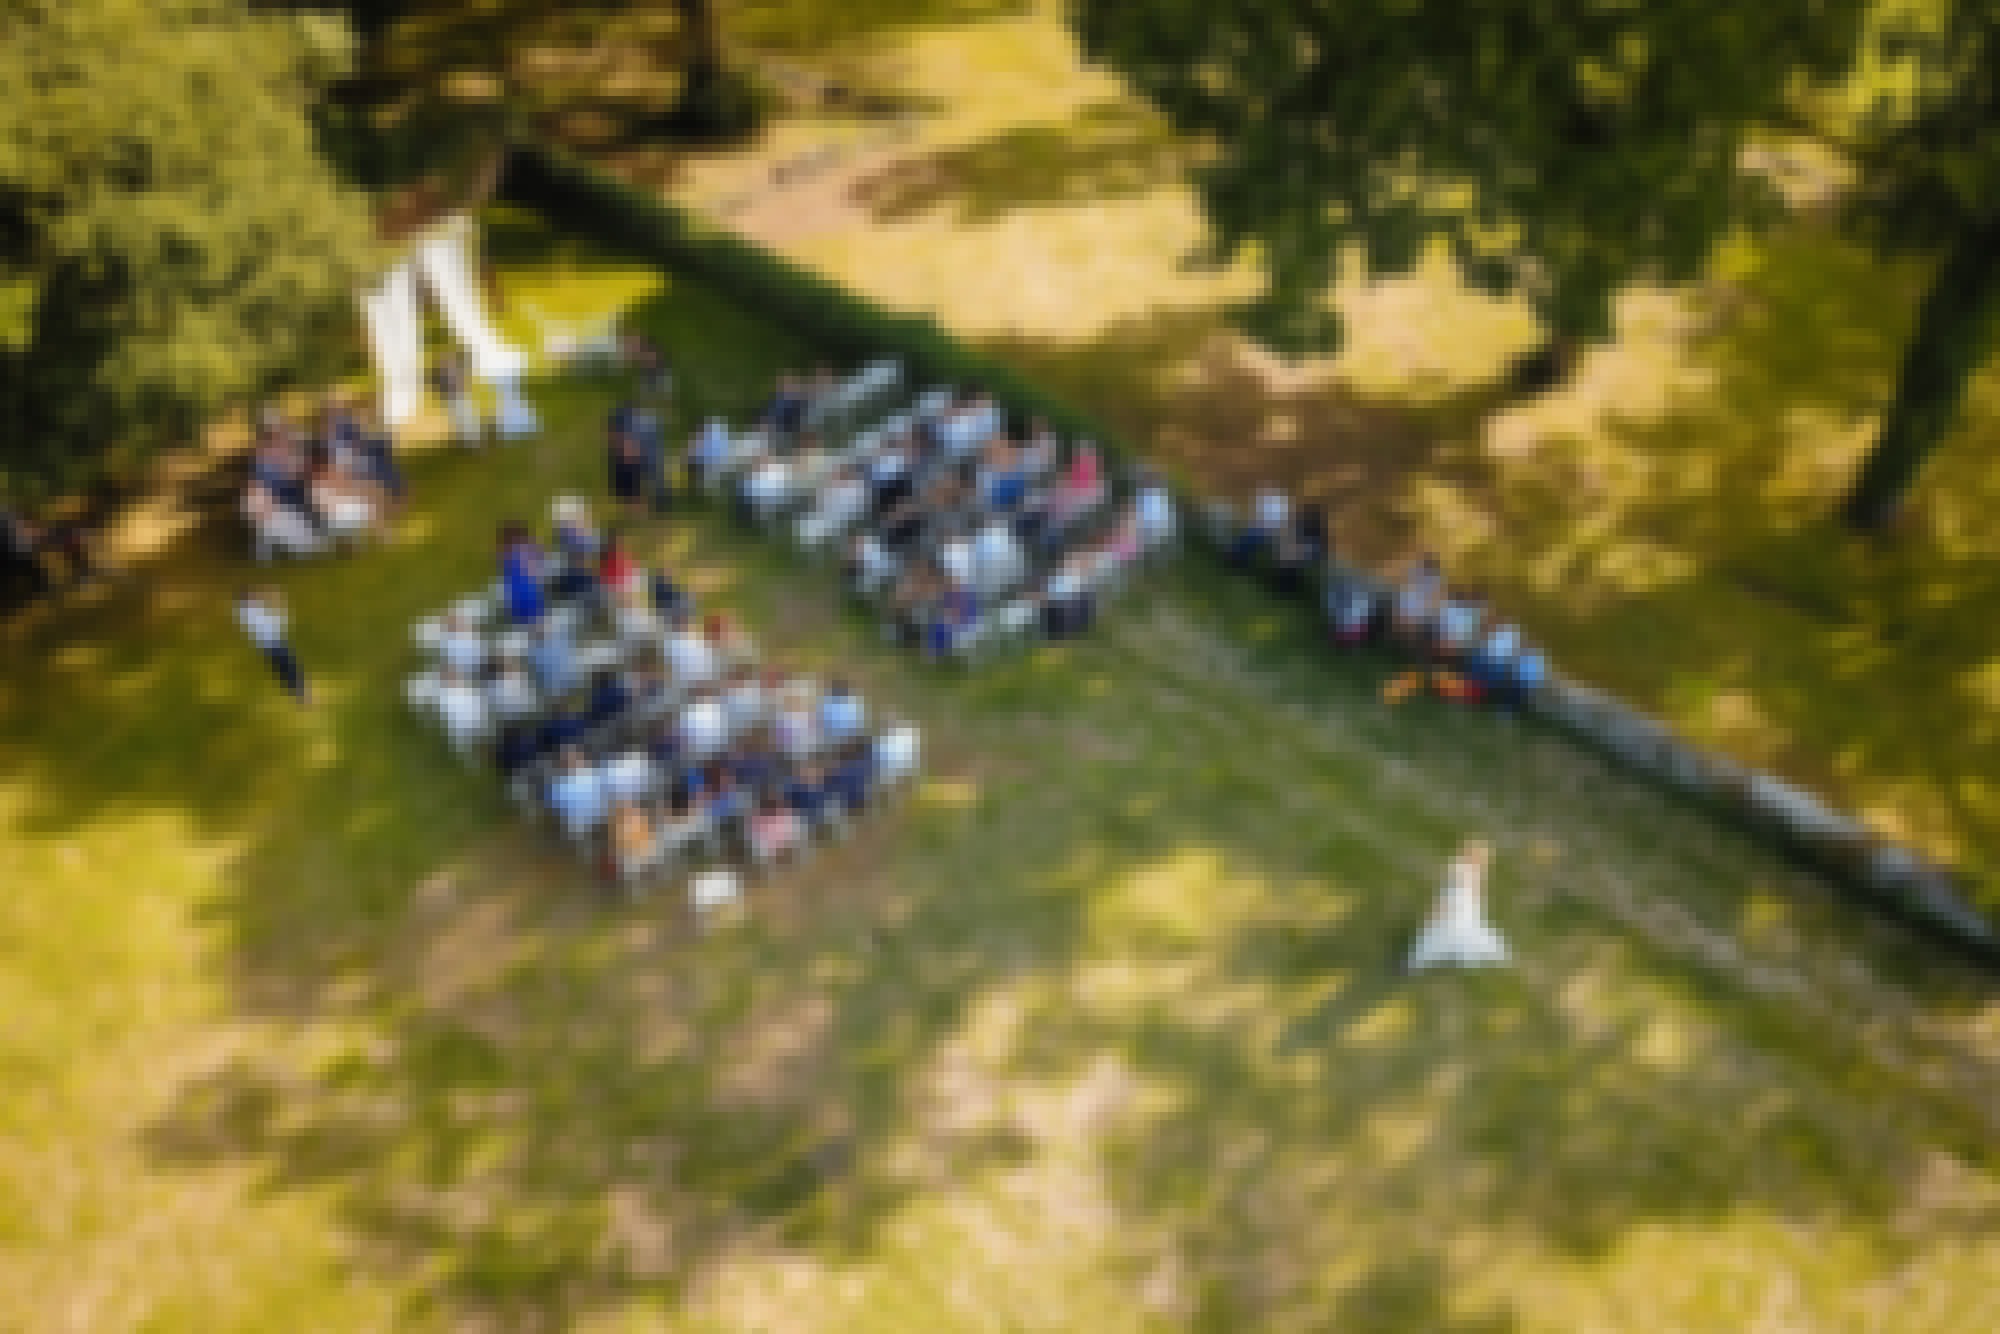 Photo du mariage de J et A prise au château de Bois Rigaud en aout 2019